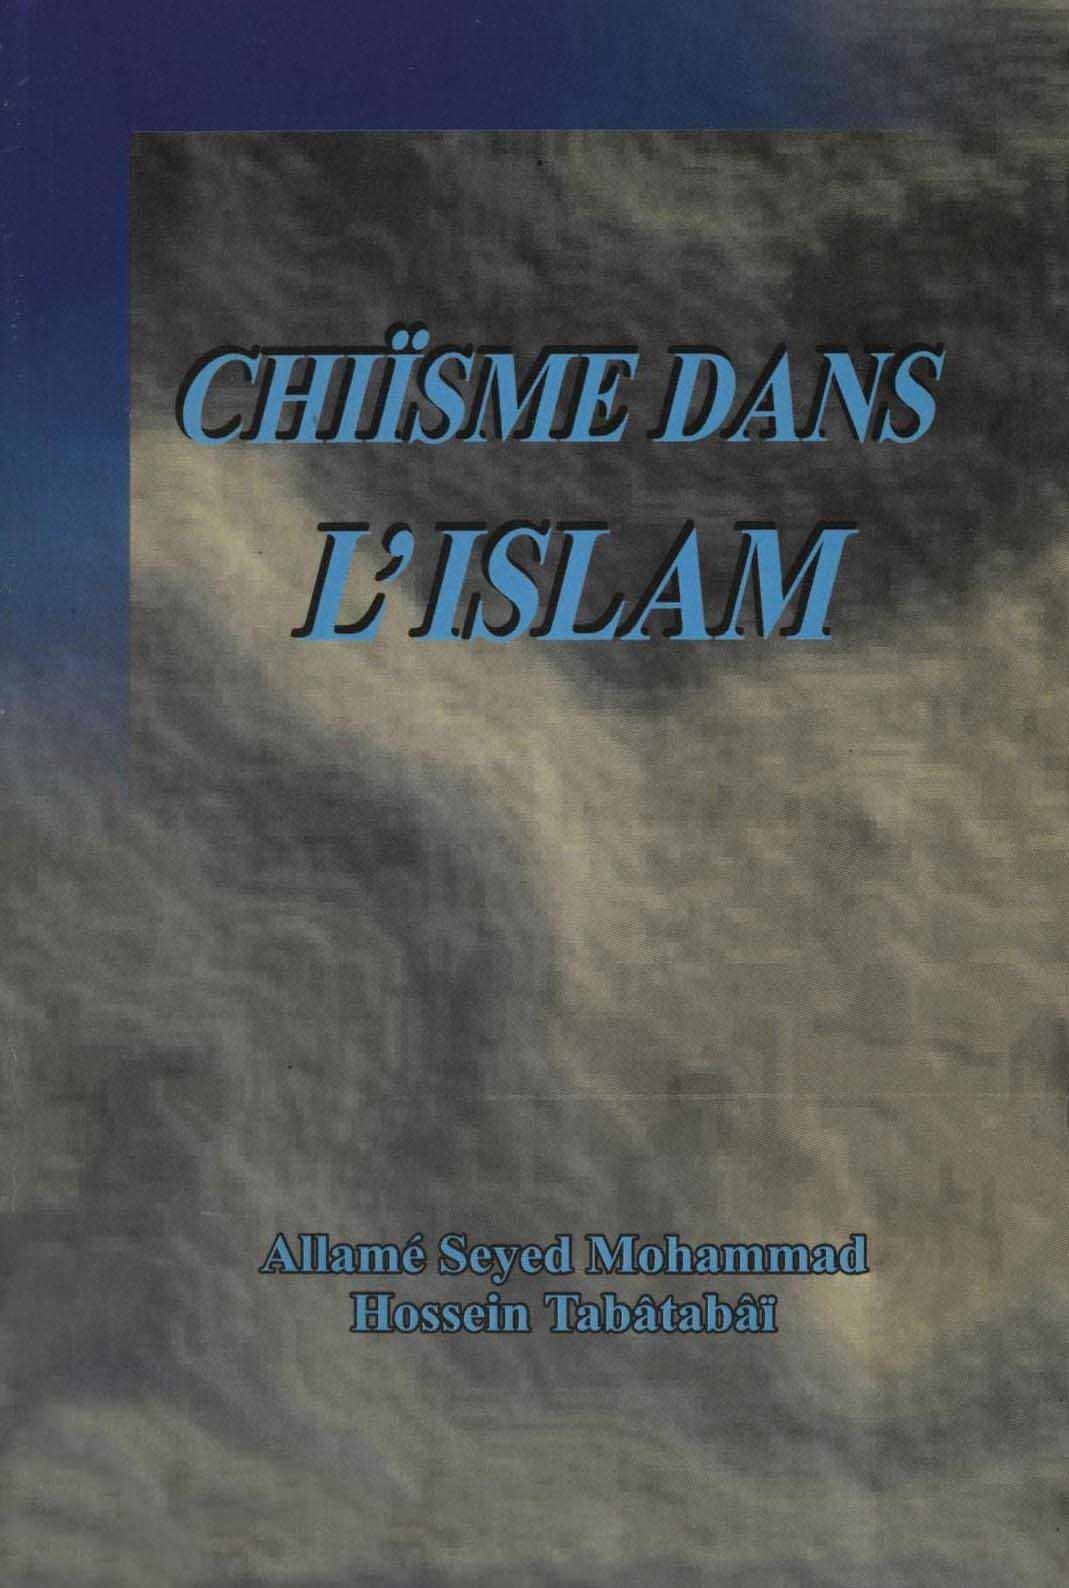 Chiisme dans l'Islam